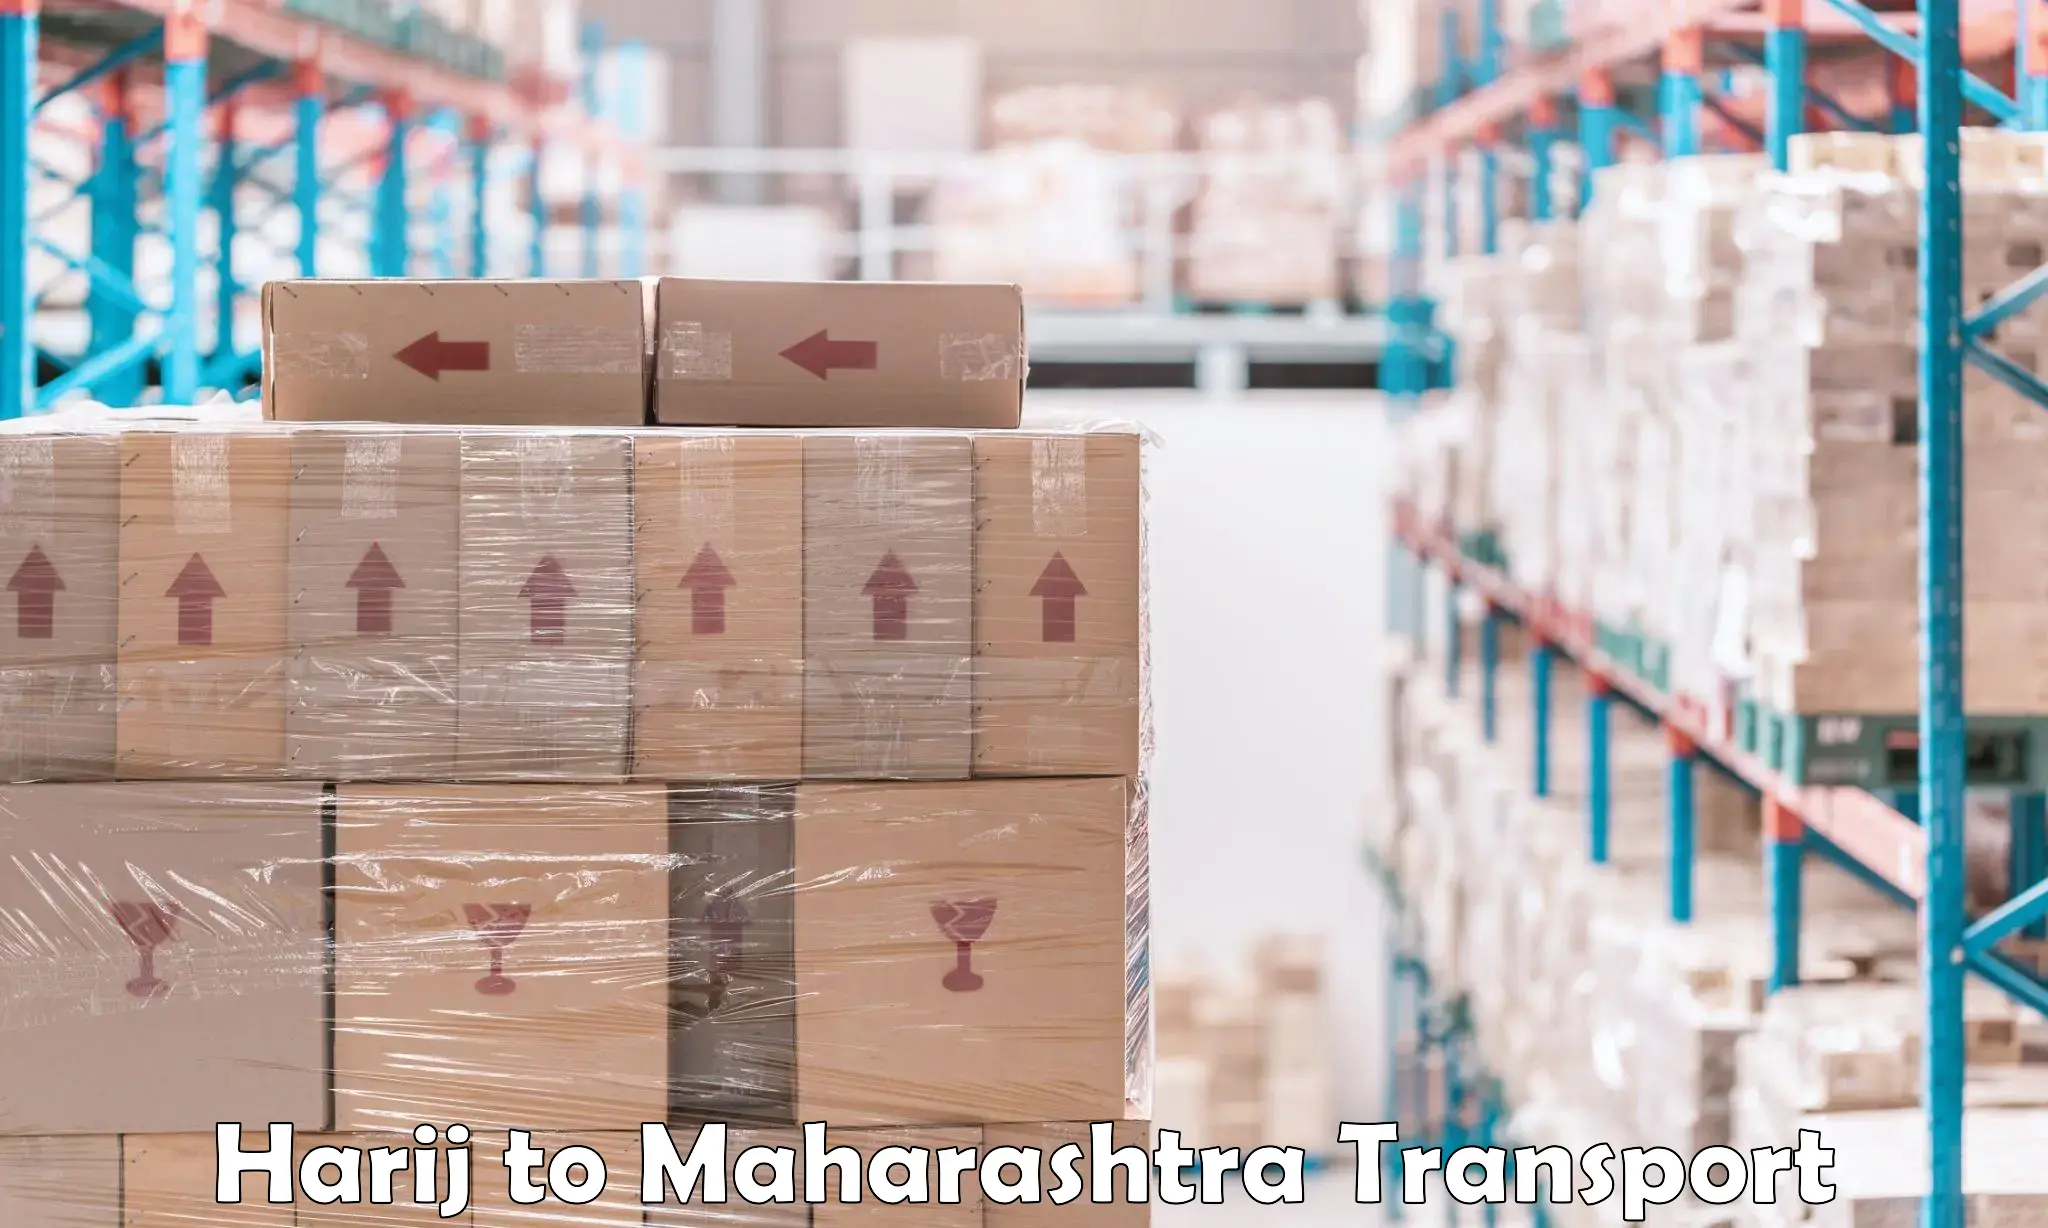 Nearby transport service Harij to Maharashtra